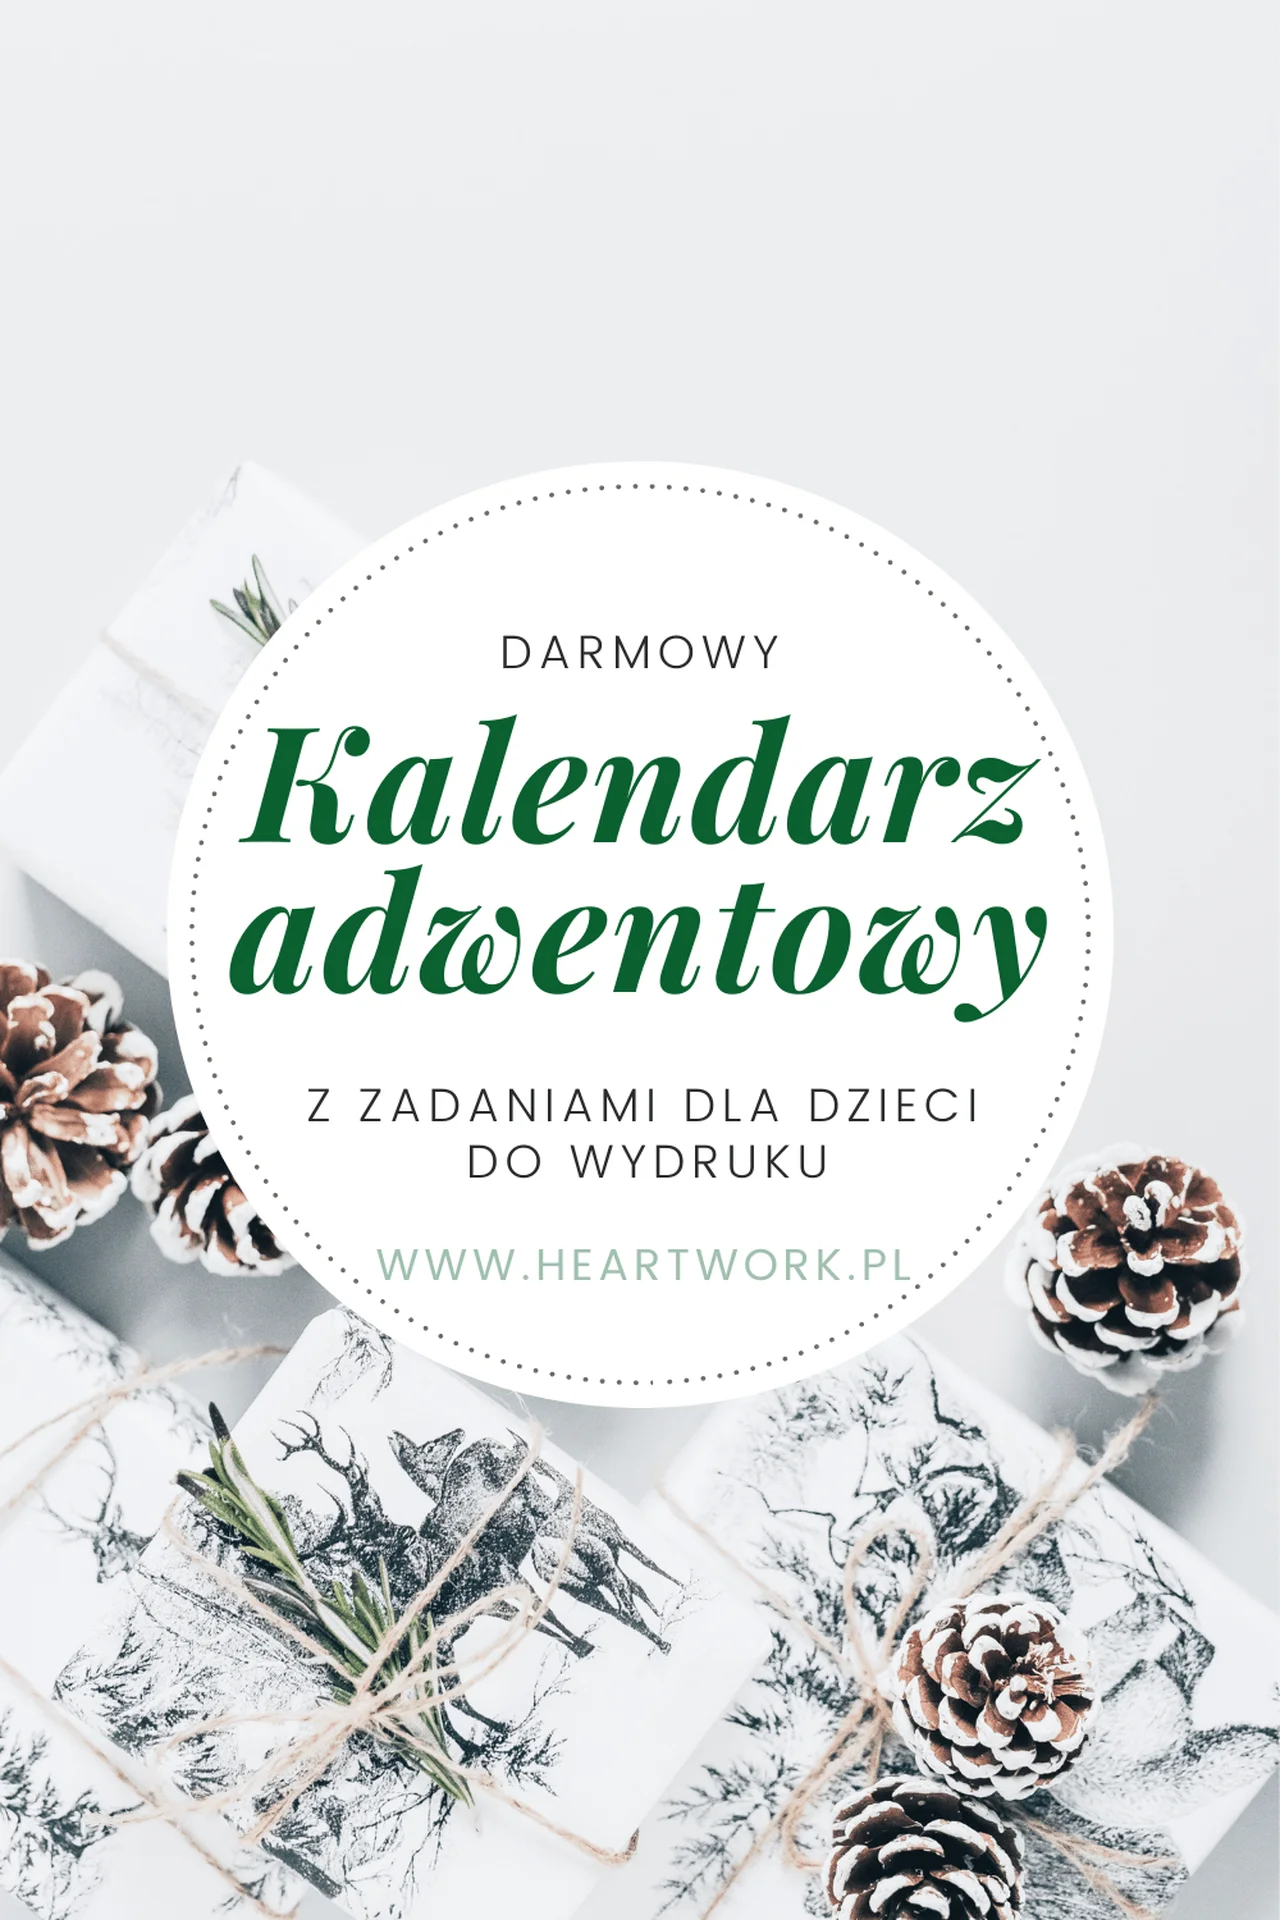 Darmowy kalendarz adwentowy dla dzieci – Heartwork – Wrocław